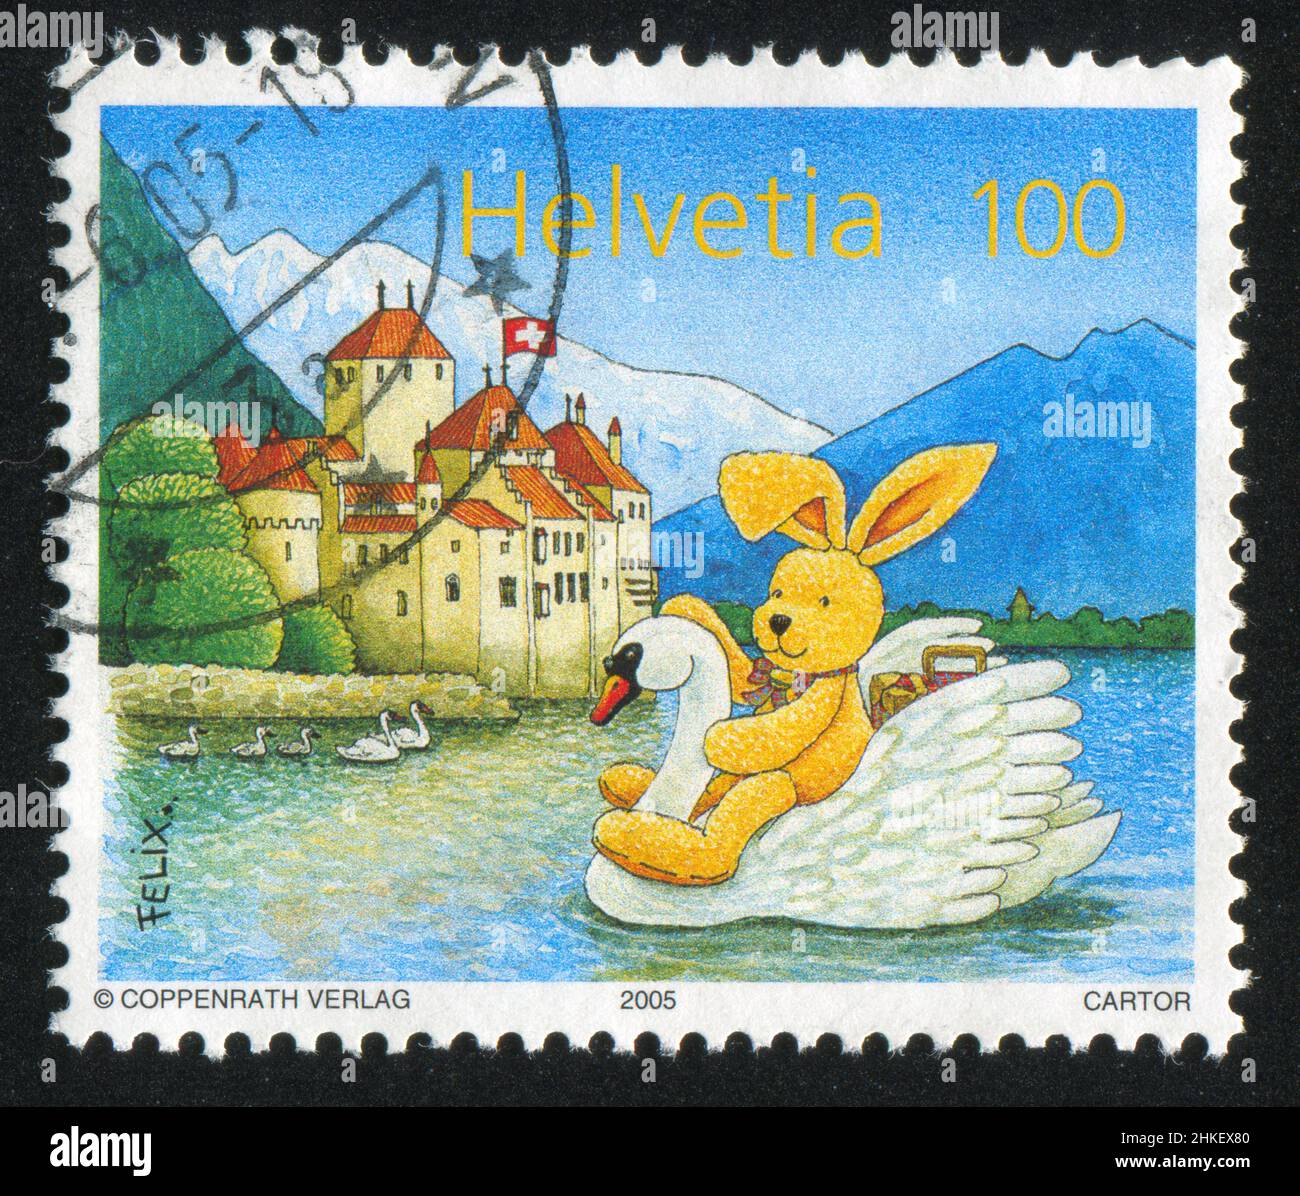 SVIZZERA - CIRCA 2005: Francobollo stampato dalla Svizzera, mostra Bunny Felix, cigni e castello di Chillon, circa 2005 Foto Stock